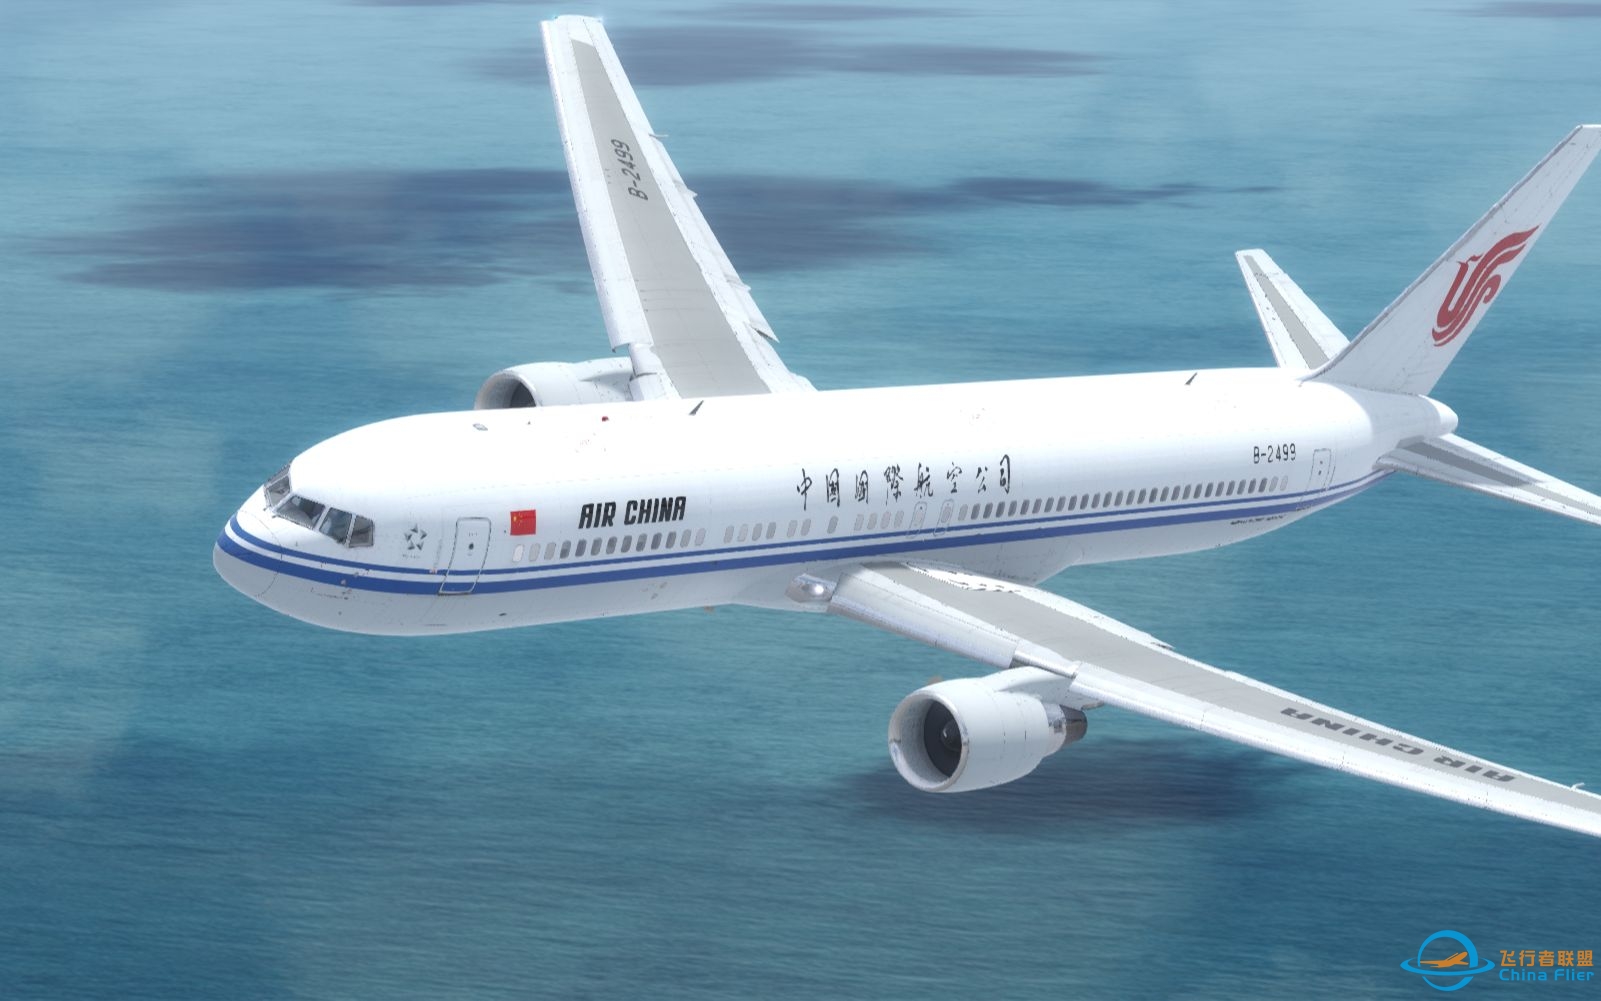 【Prepar3D落地】中国国际航空波音767-300ER落地上海虹桥-6898 